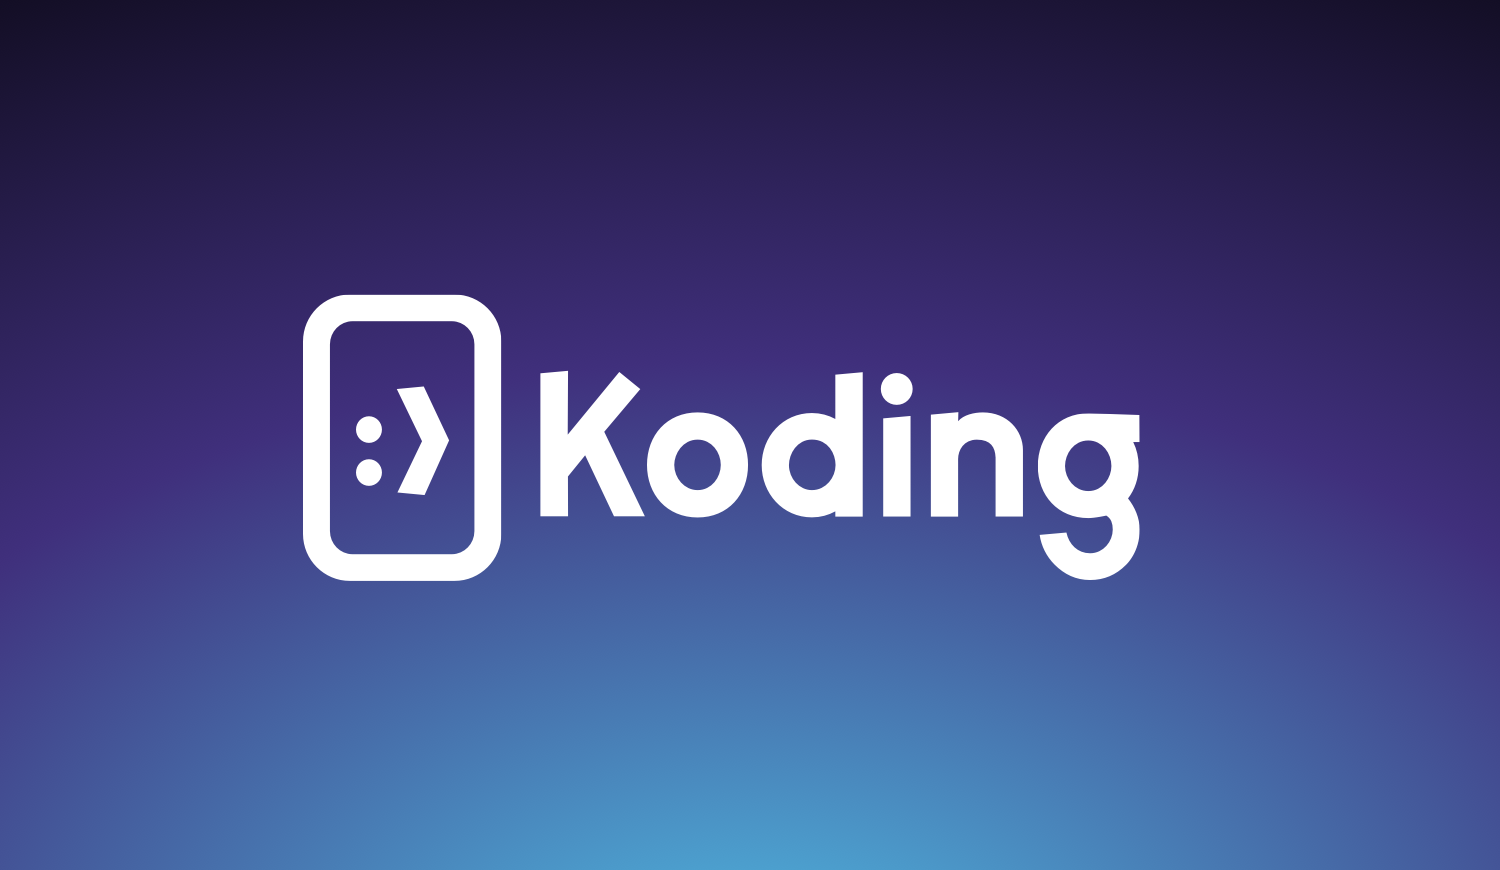 Koding new logo 2016